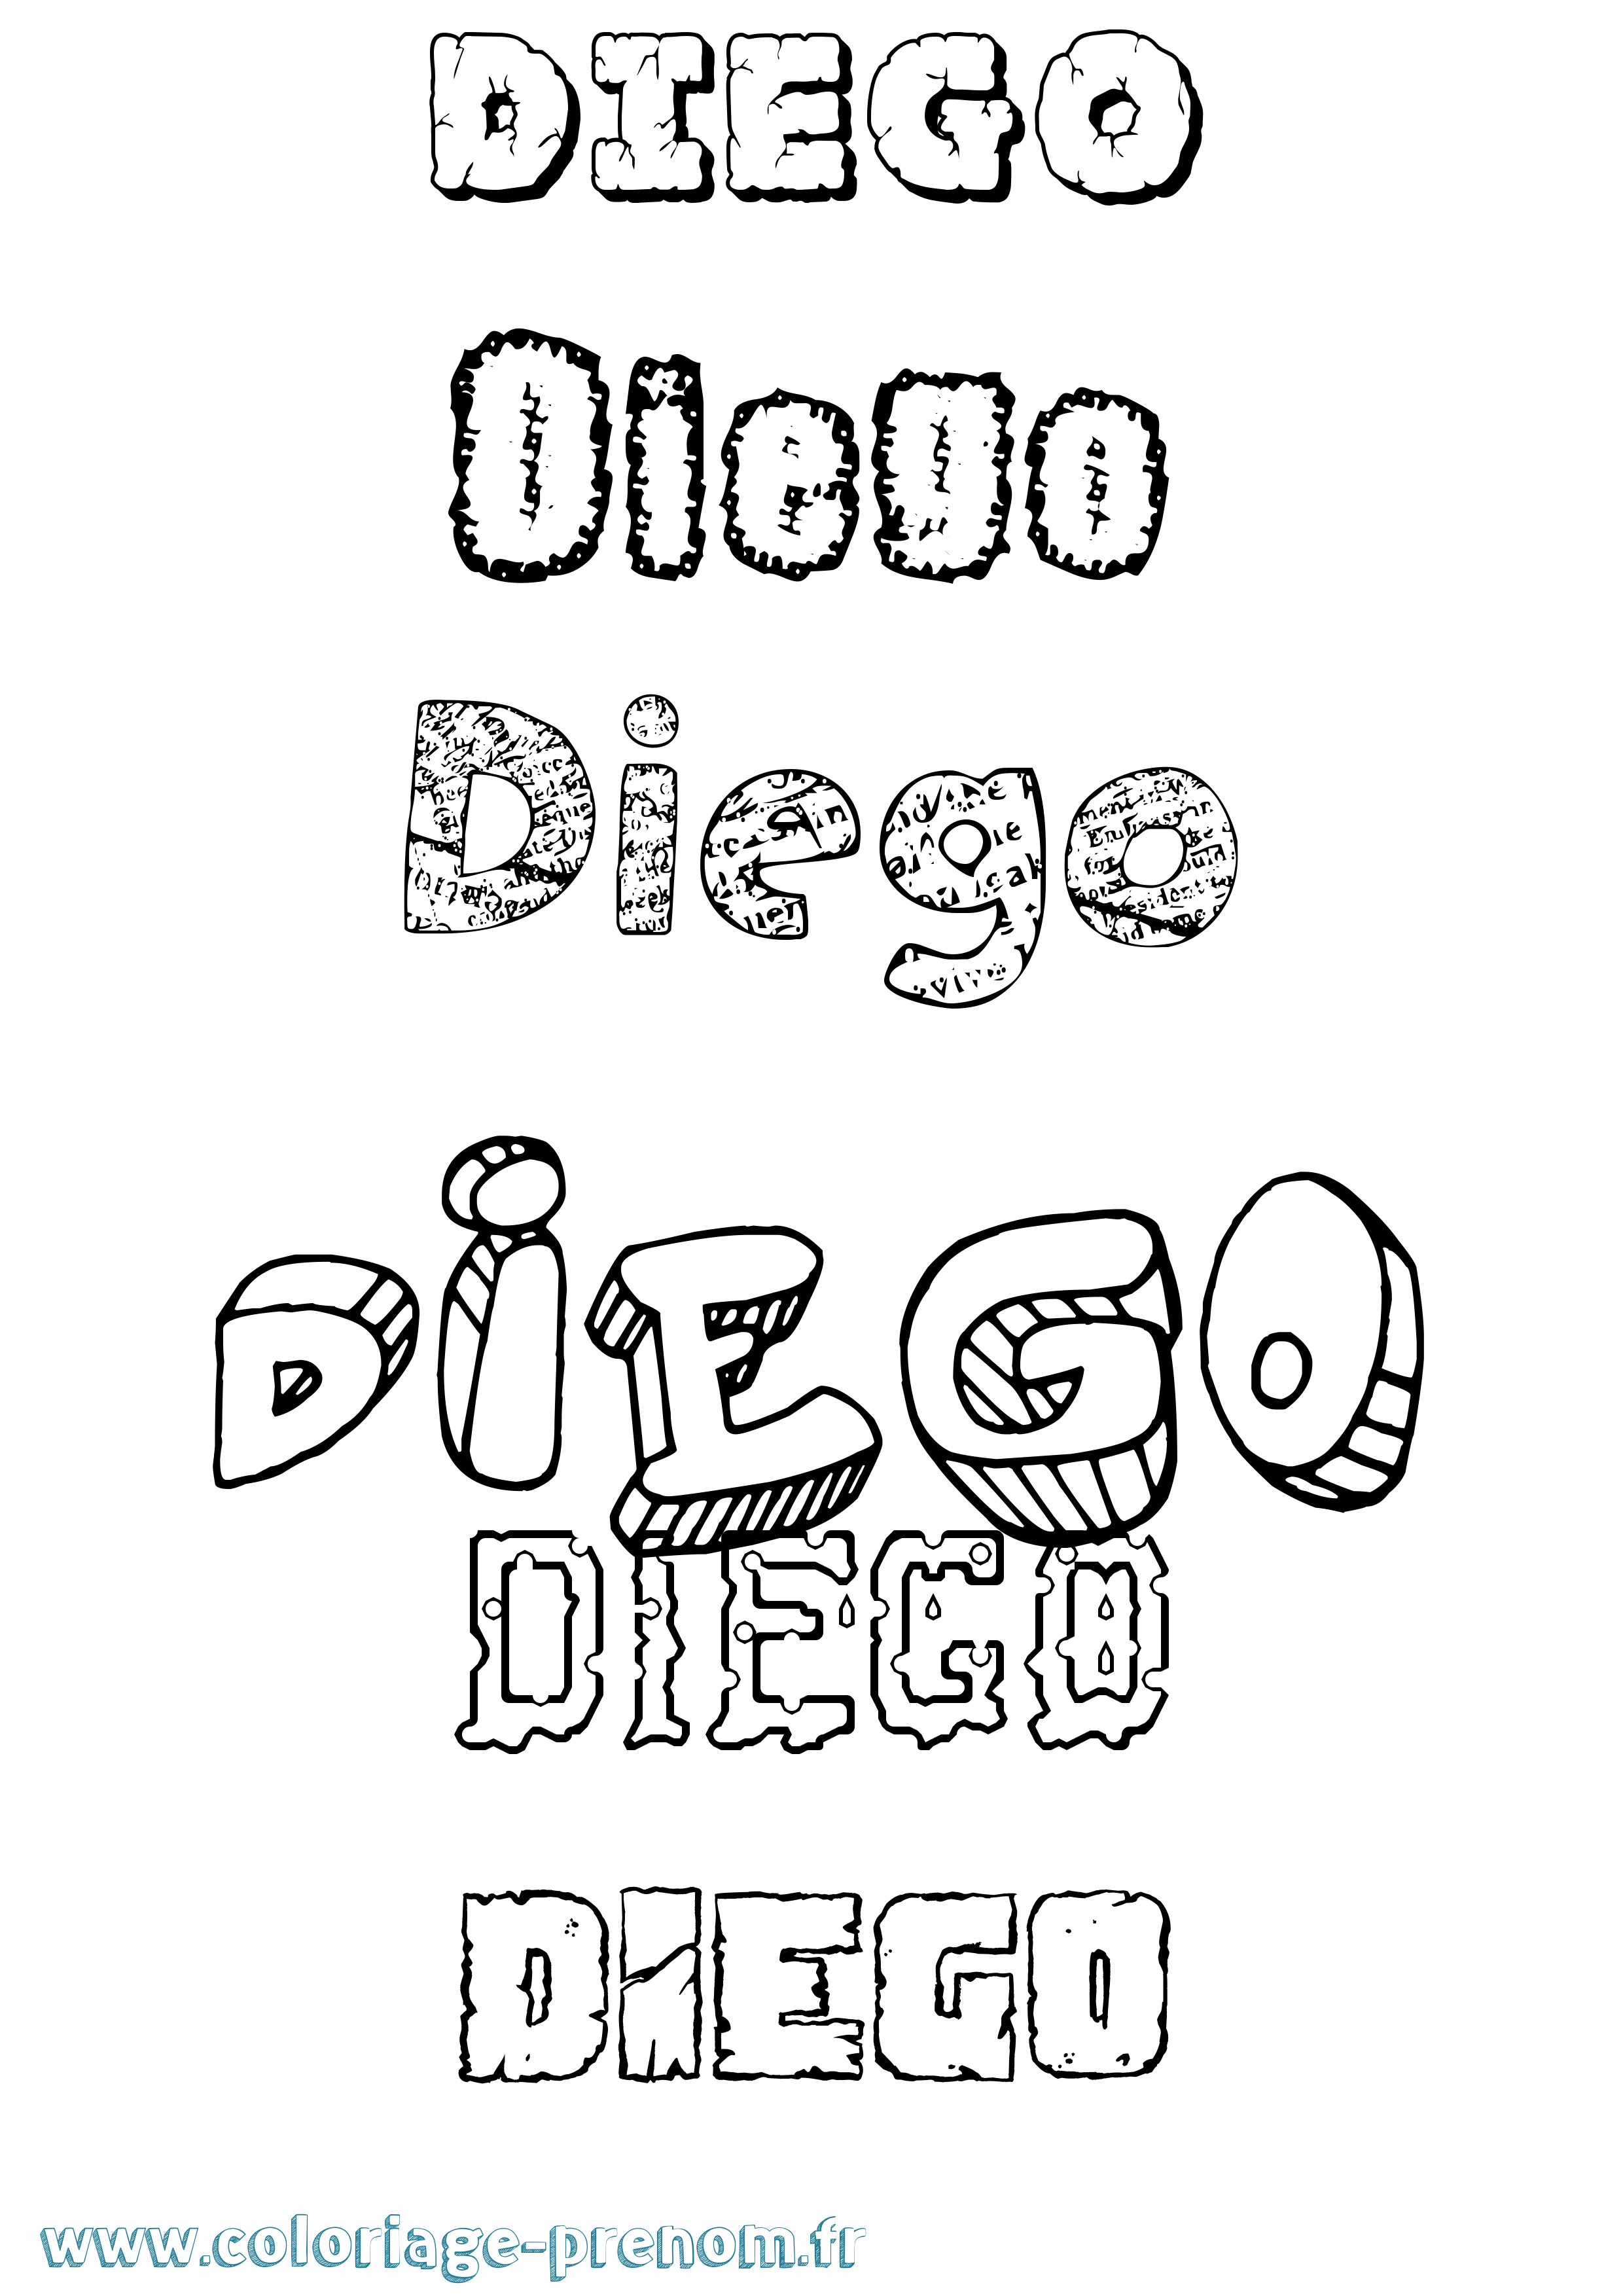 Coloriage prénom Diego